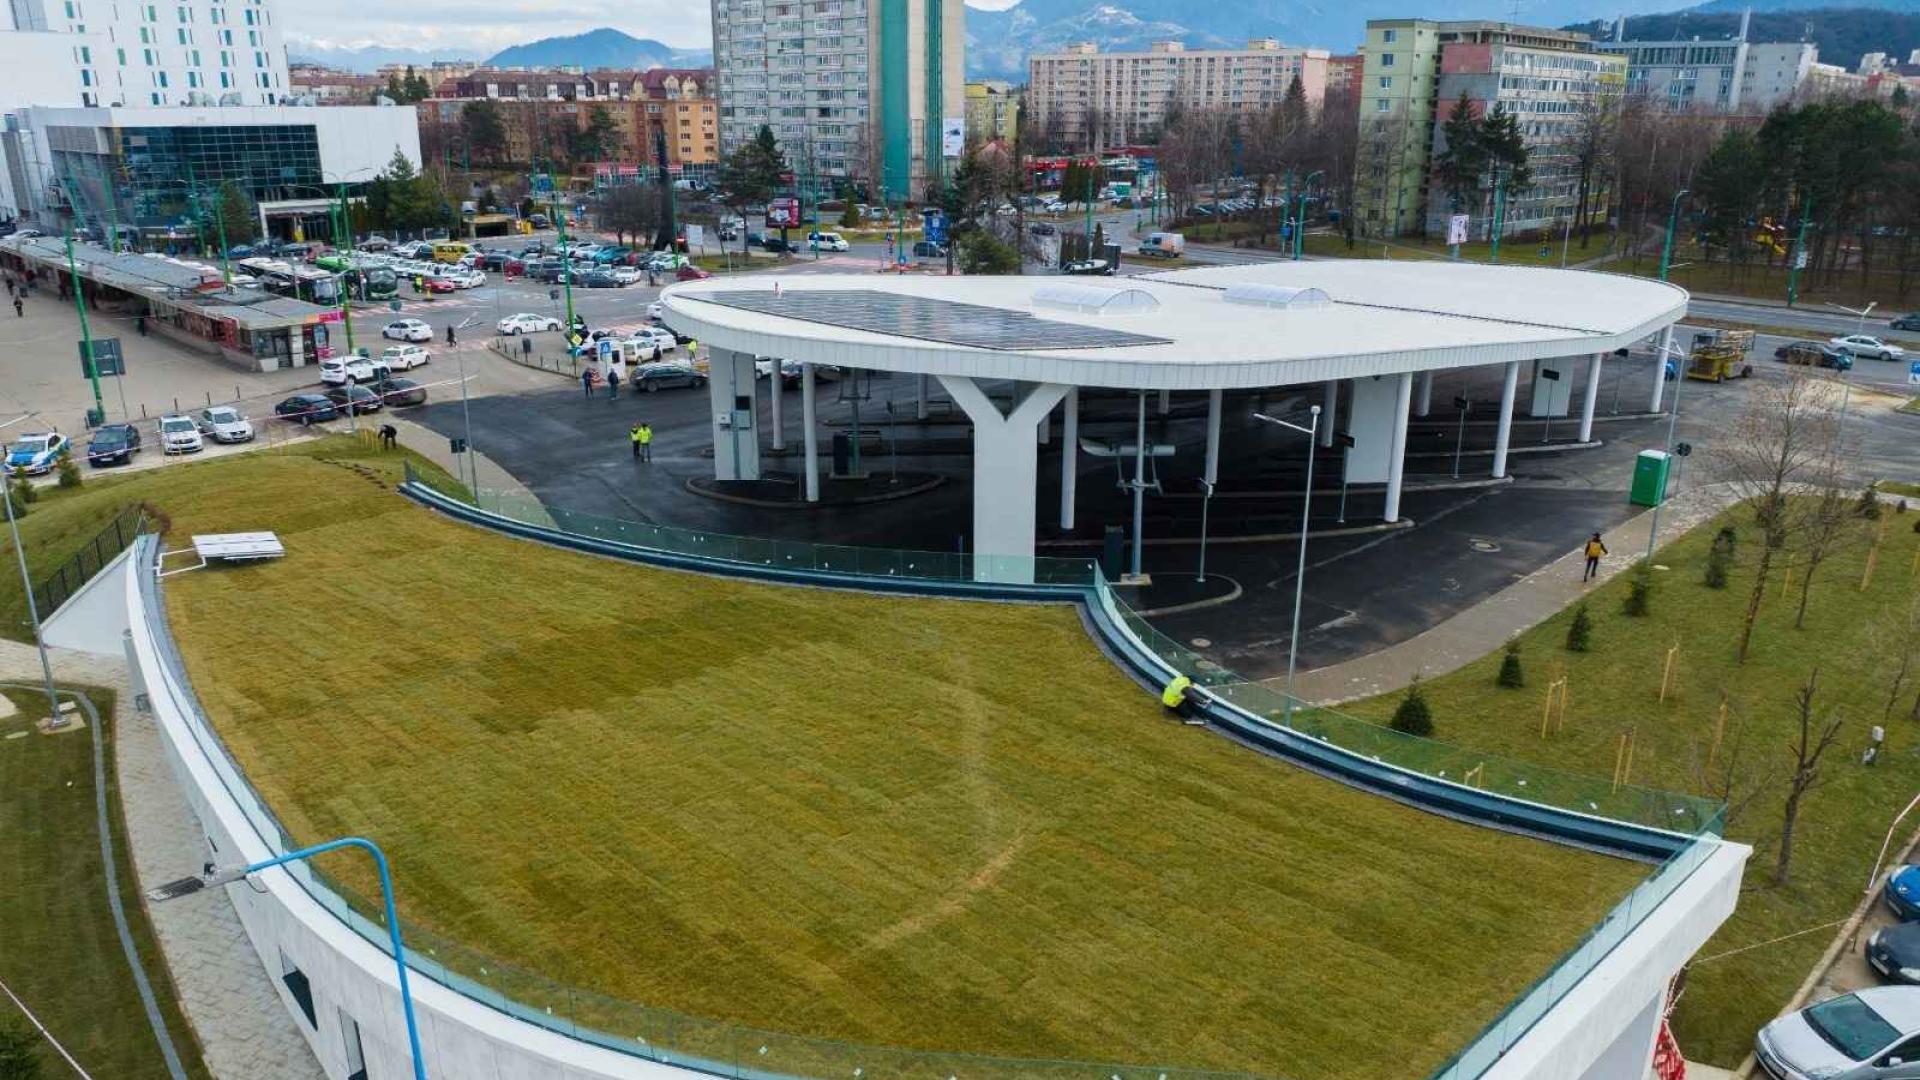 سقف سبز و پایانه خورشیدی برای اتوبوسها در رومانی